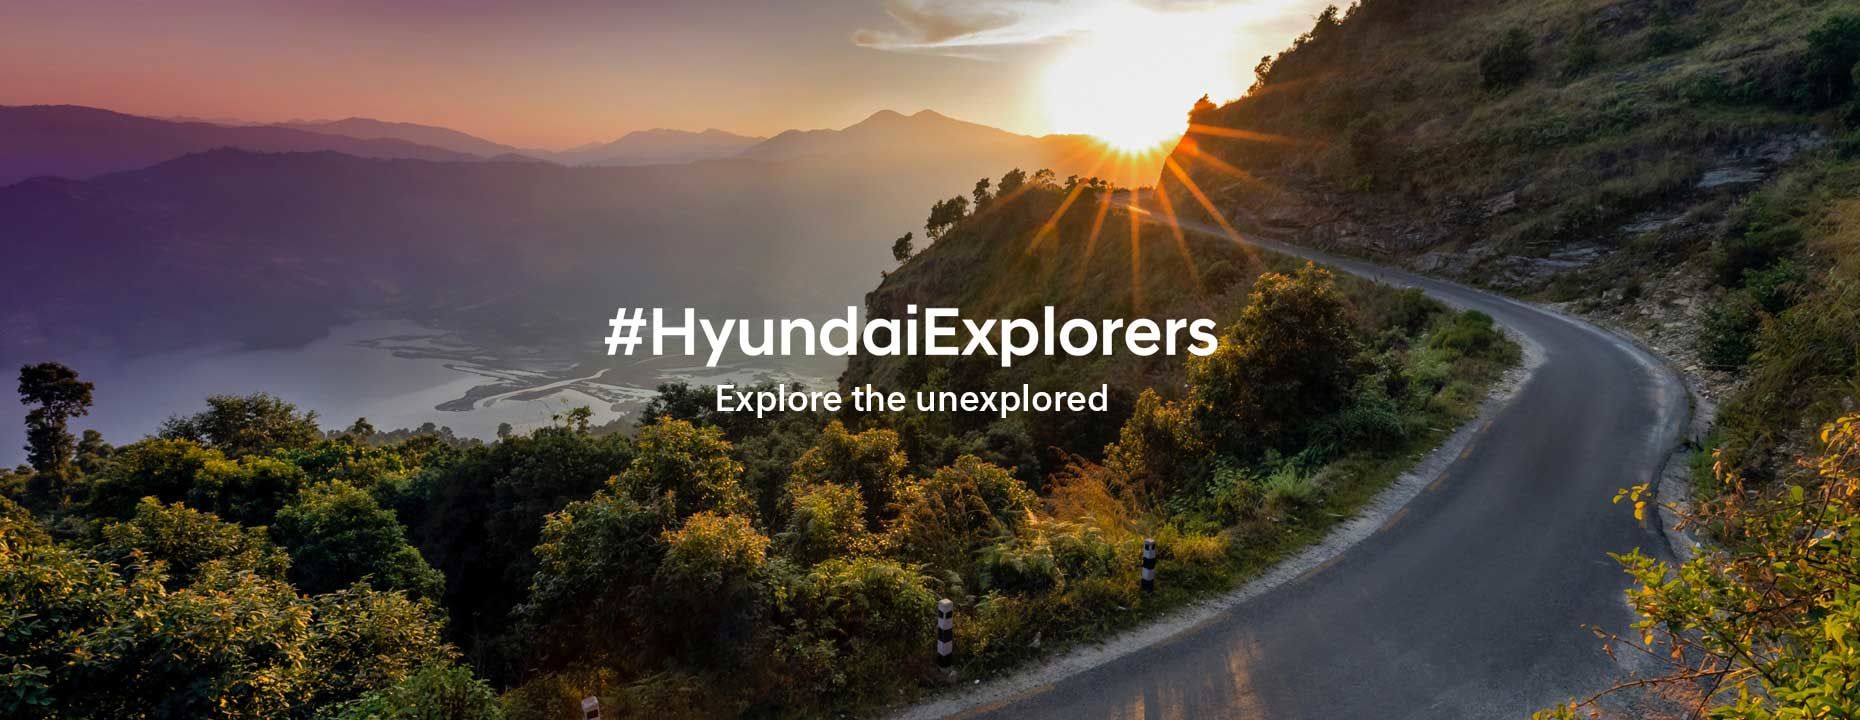 HyundaiExplorers